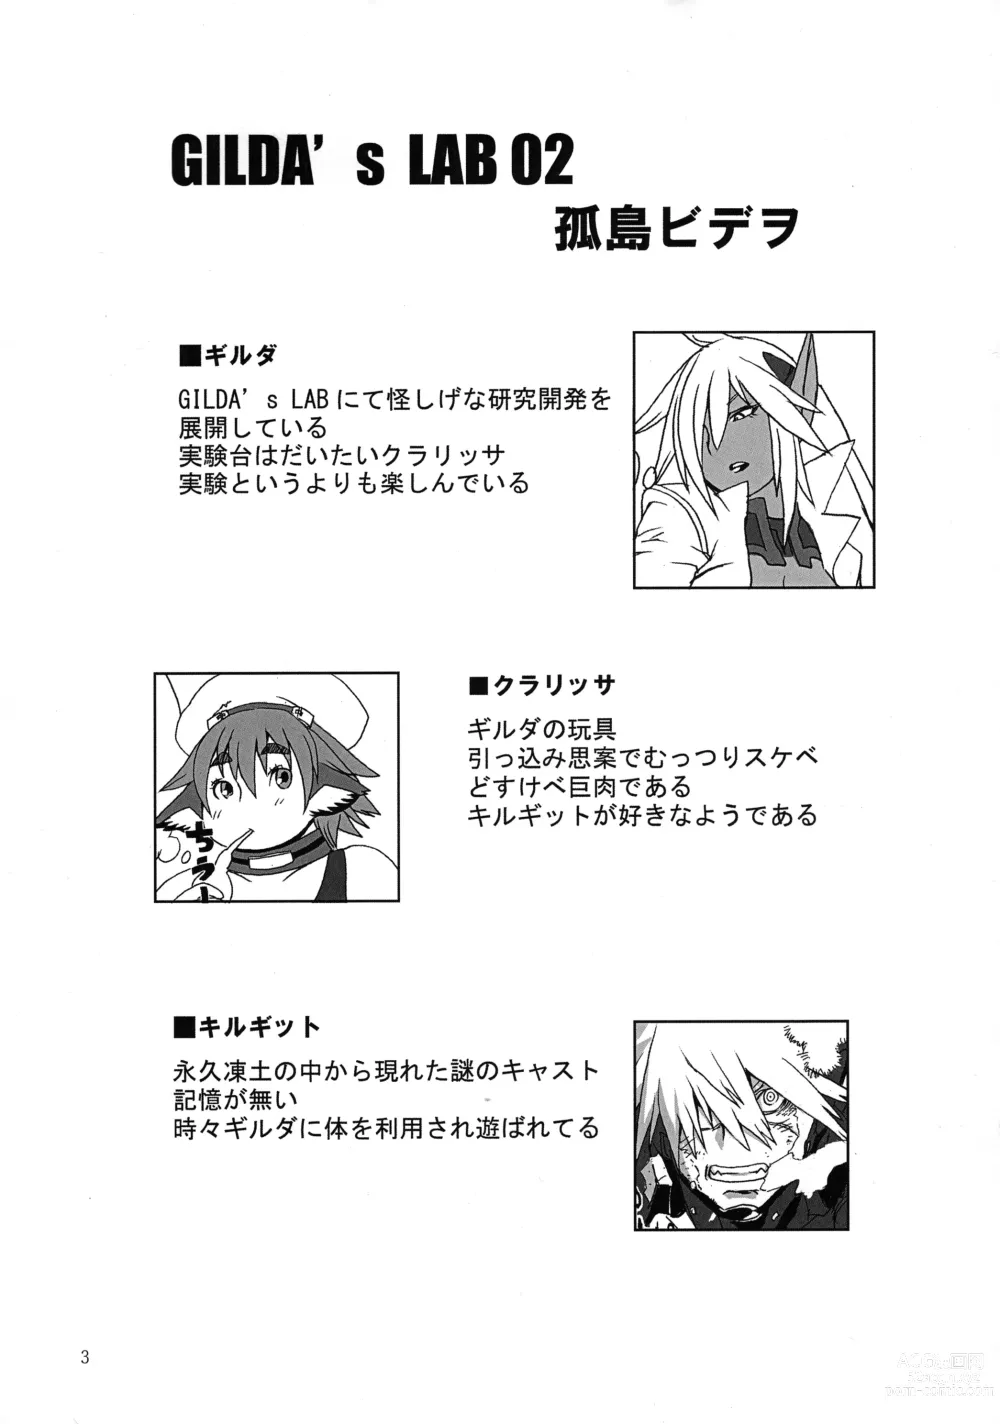 Page 3 of doujinshi GILDAS LAB 02